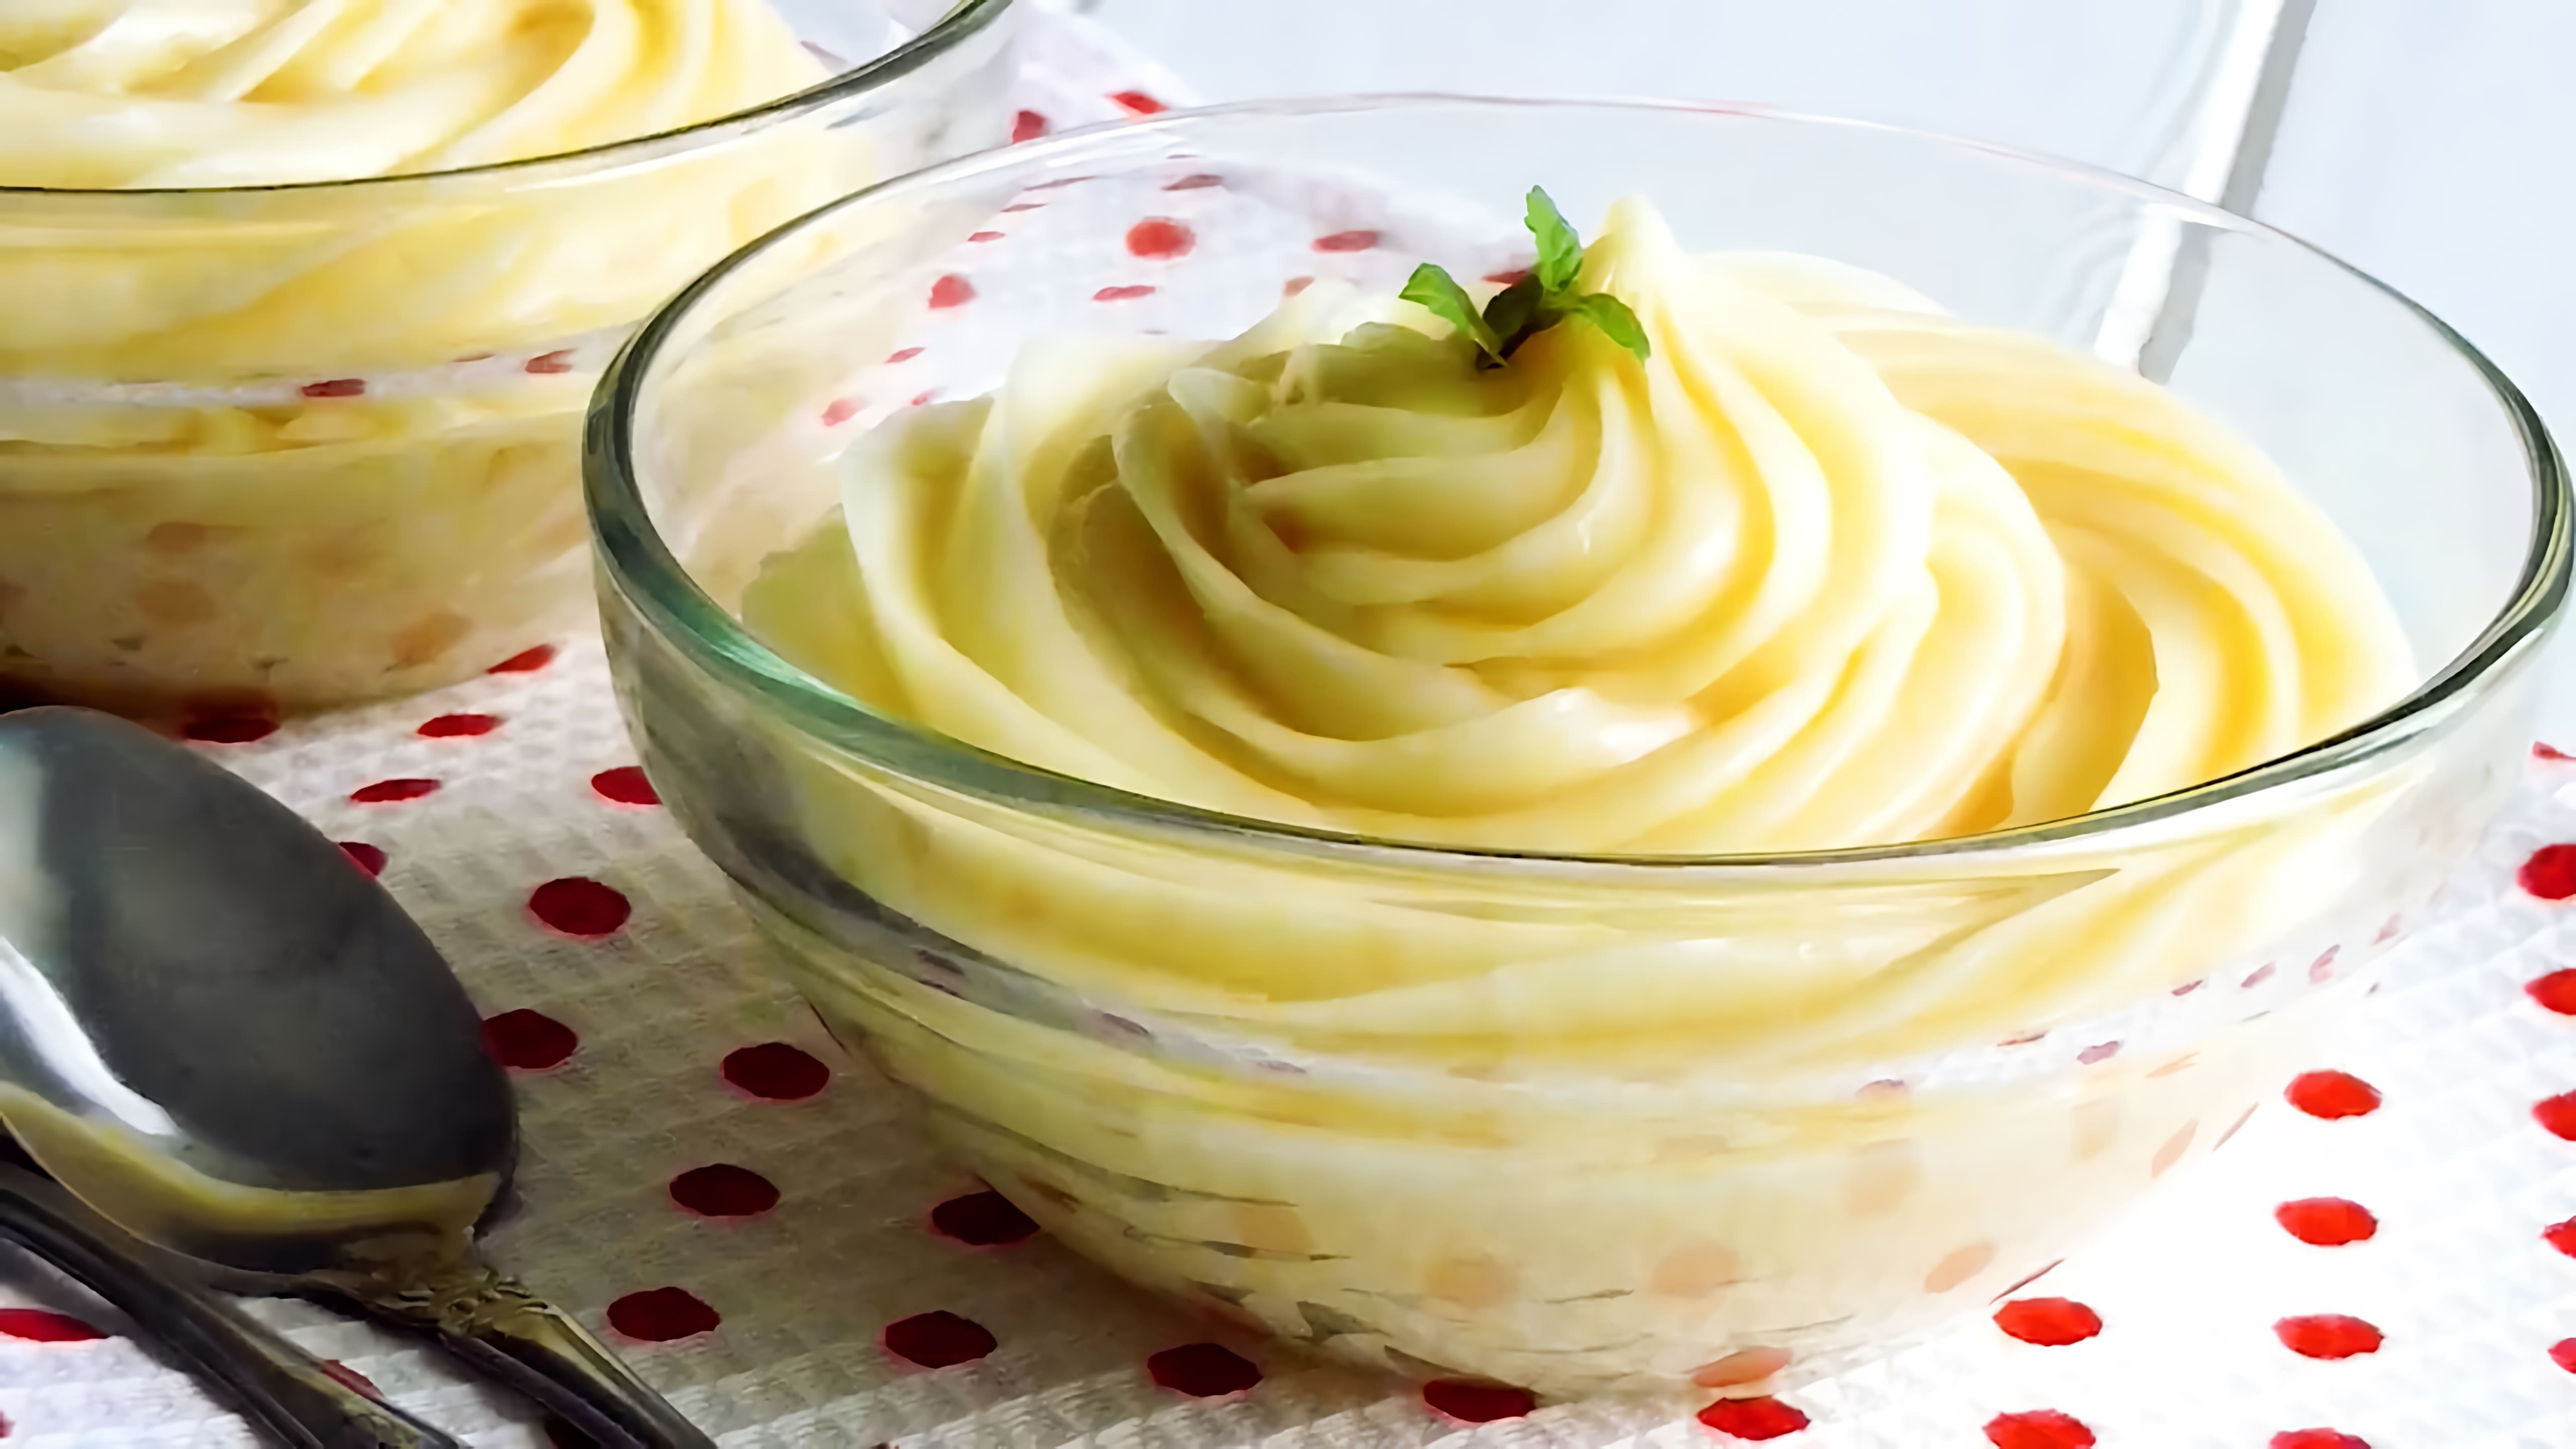 В этом видео демонстрируется рецепт классического заварного крема, который можно использовать для приготовления эклеров, бисквитных тортов и торта наполеон